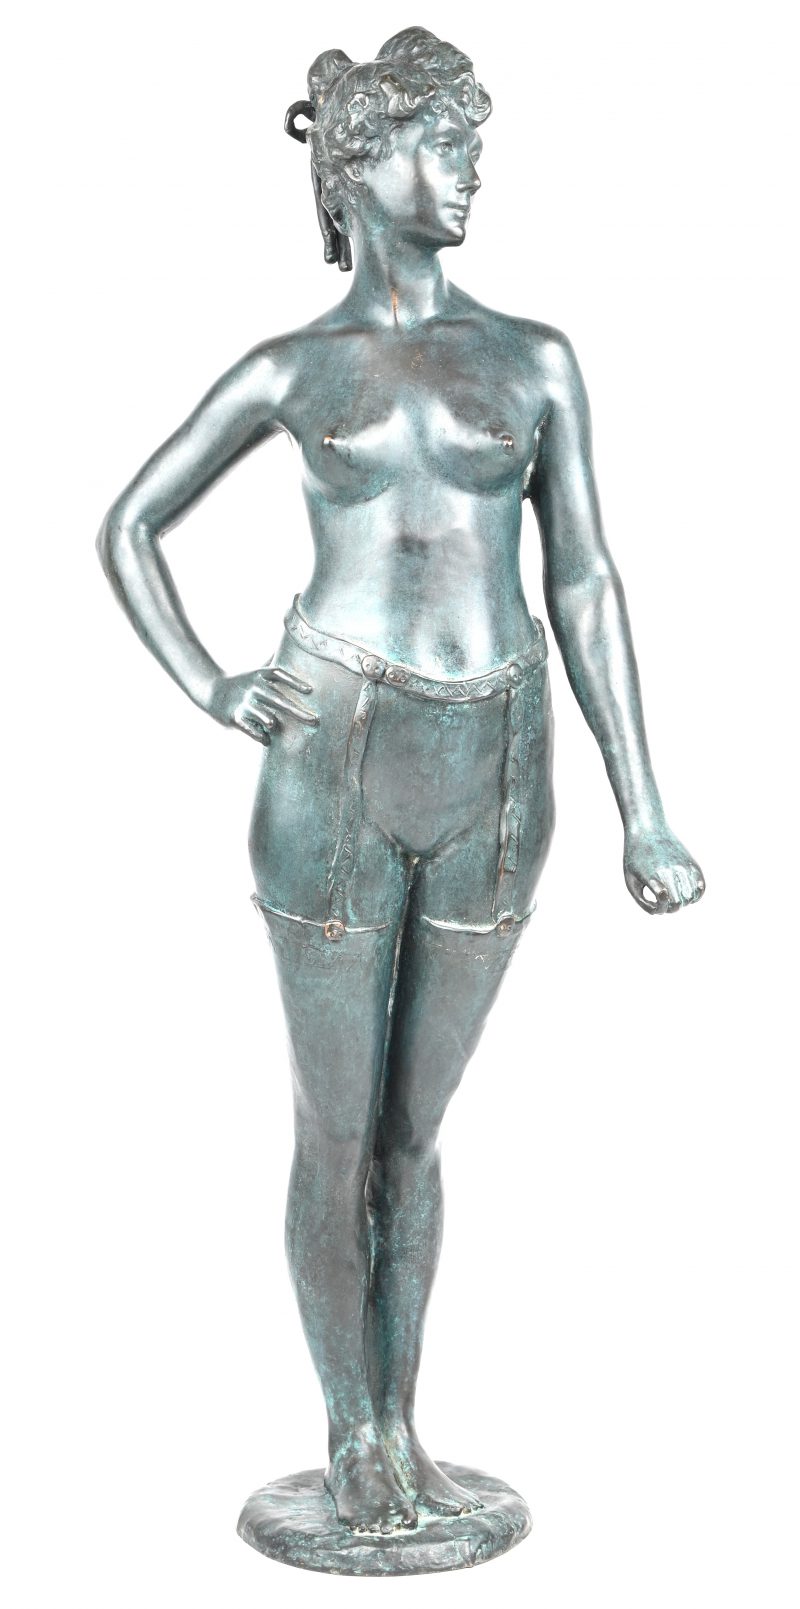 “Naakt in jarretels”. Een bronzen beeld in de geest van de jaren ‘20. Draagt monogram M”.